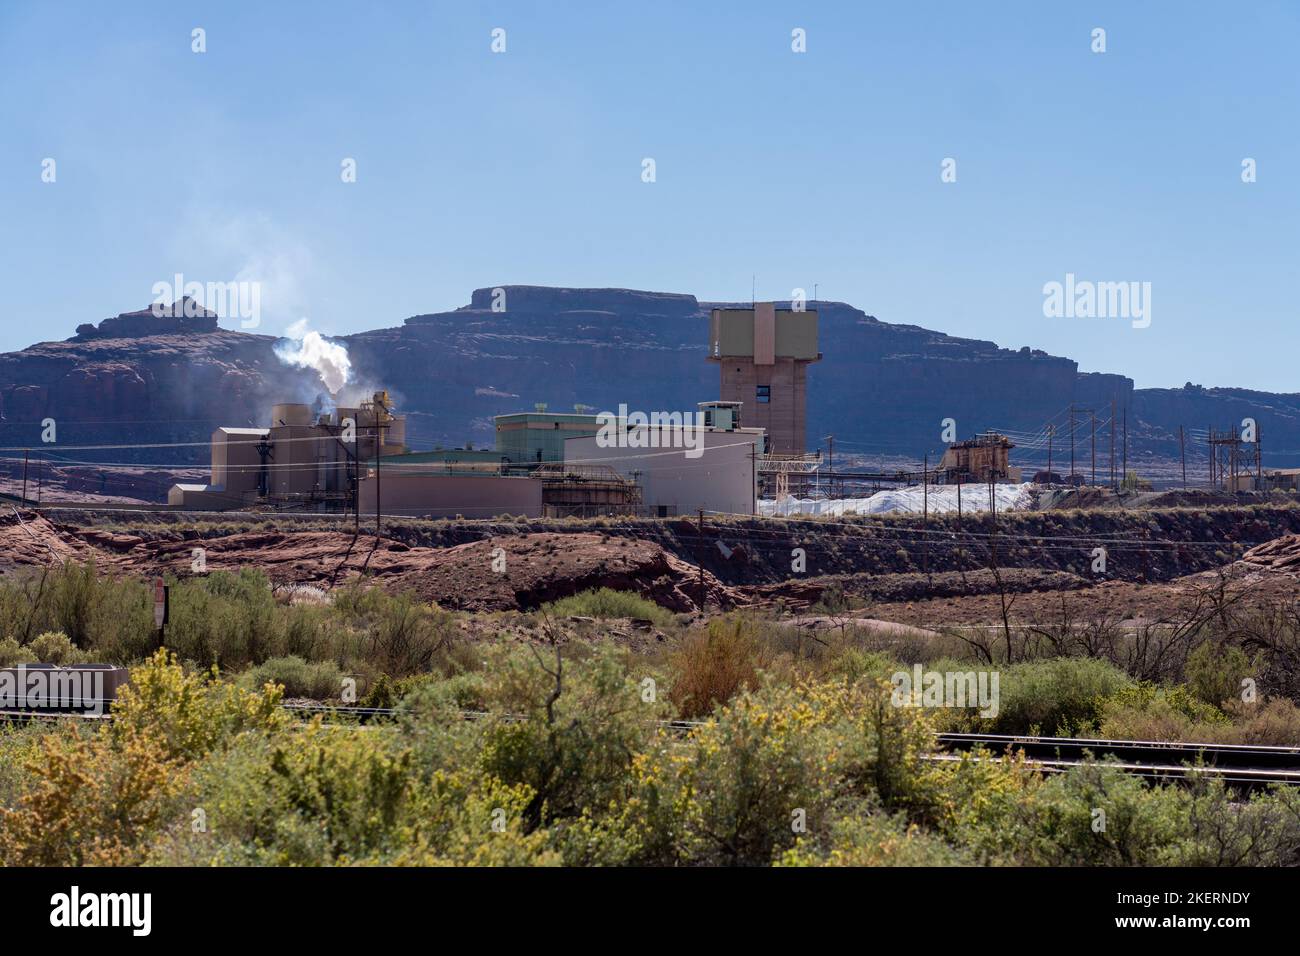 La planta de procesamiento en una mina de potasa que utiliza un método de extracción de soluciones cerca de Moab, Utah. Foto de stock